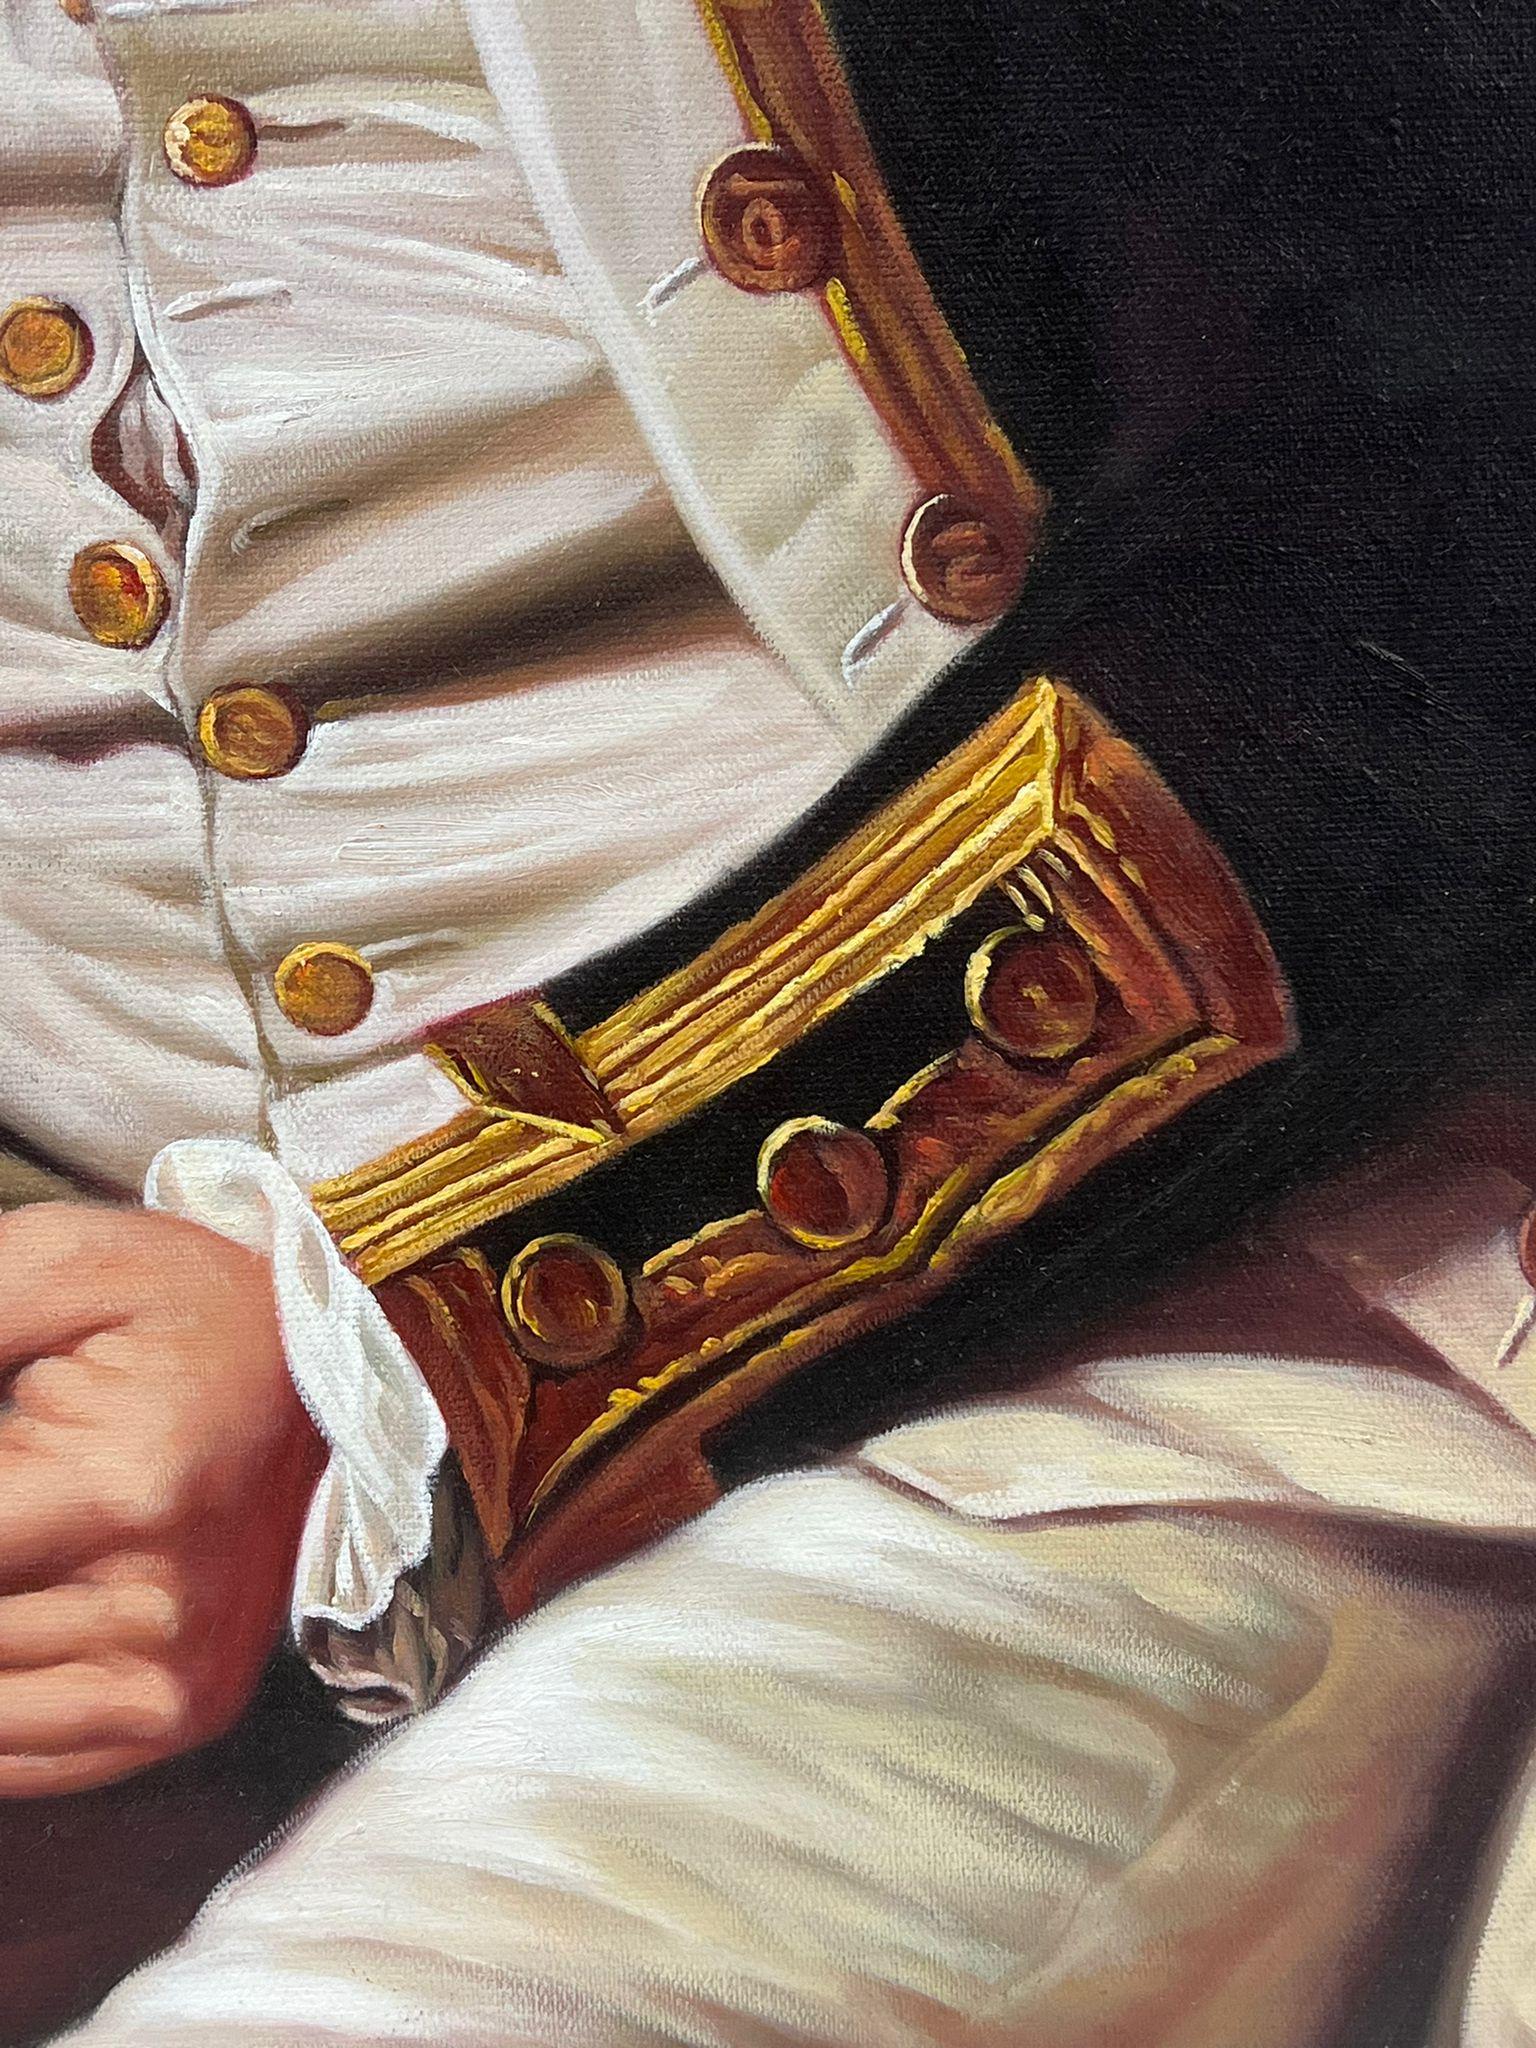 Captain James Cook Portrait Large Oil Painting on Canvas 1